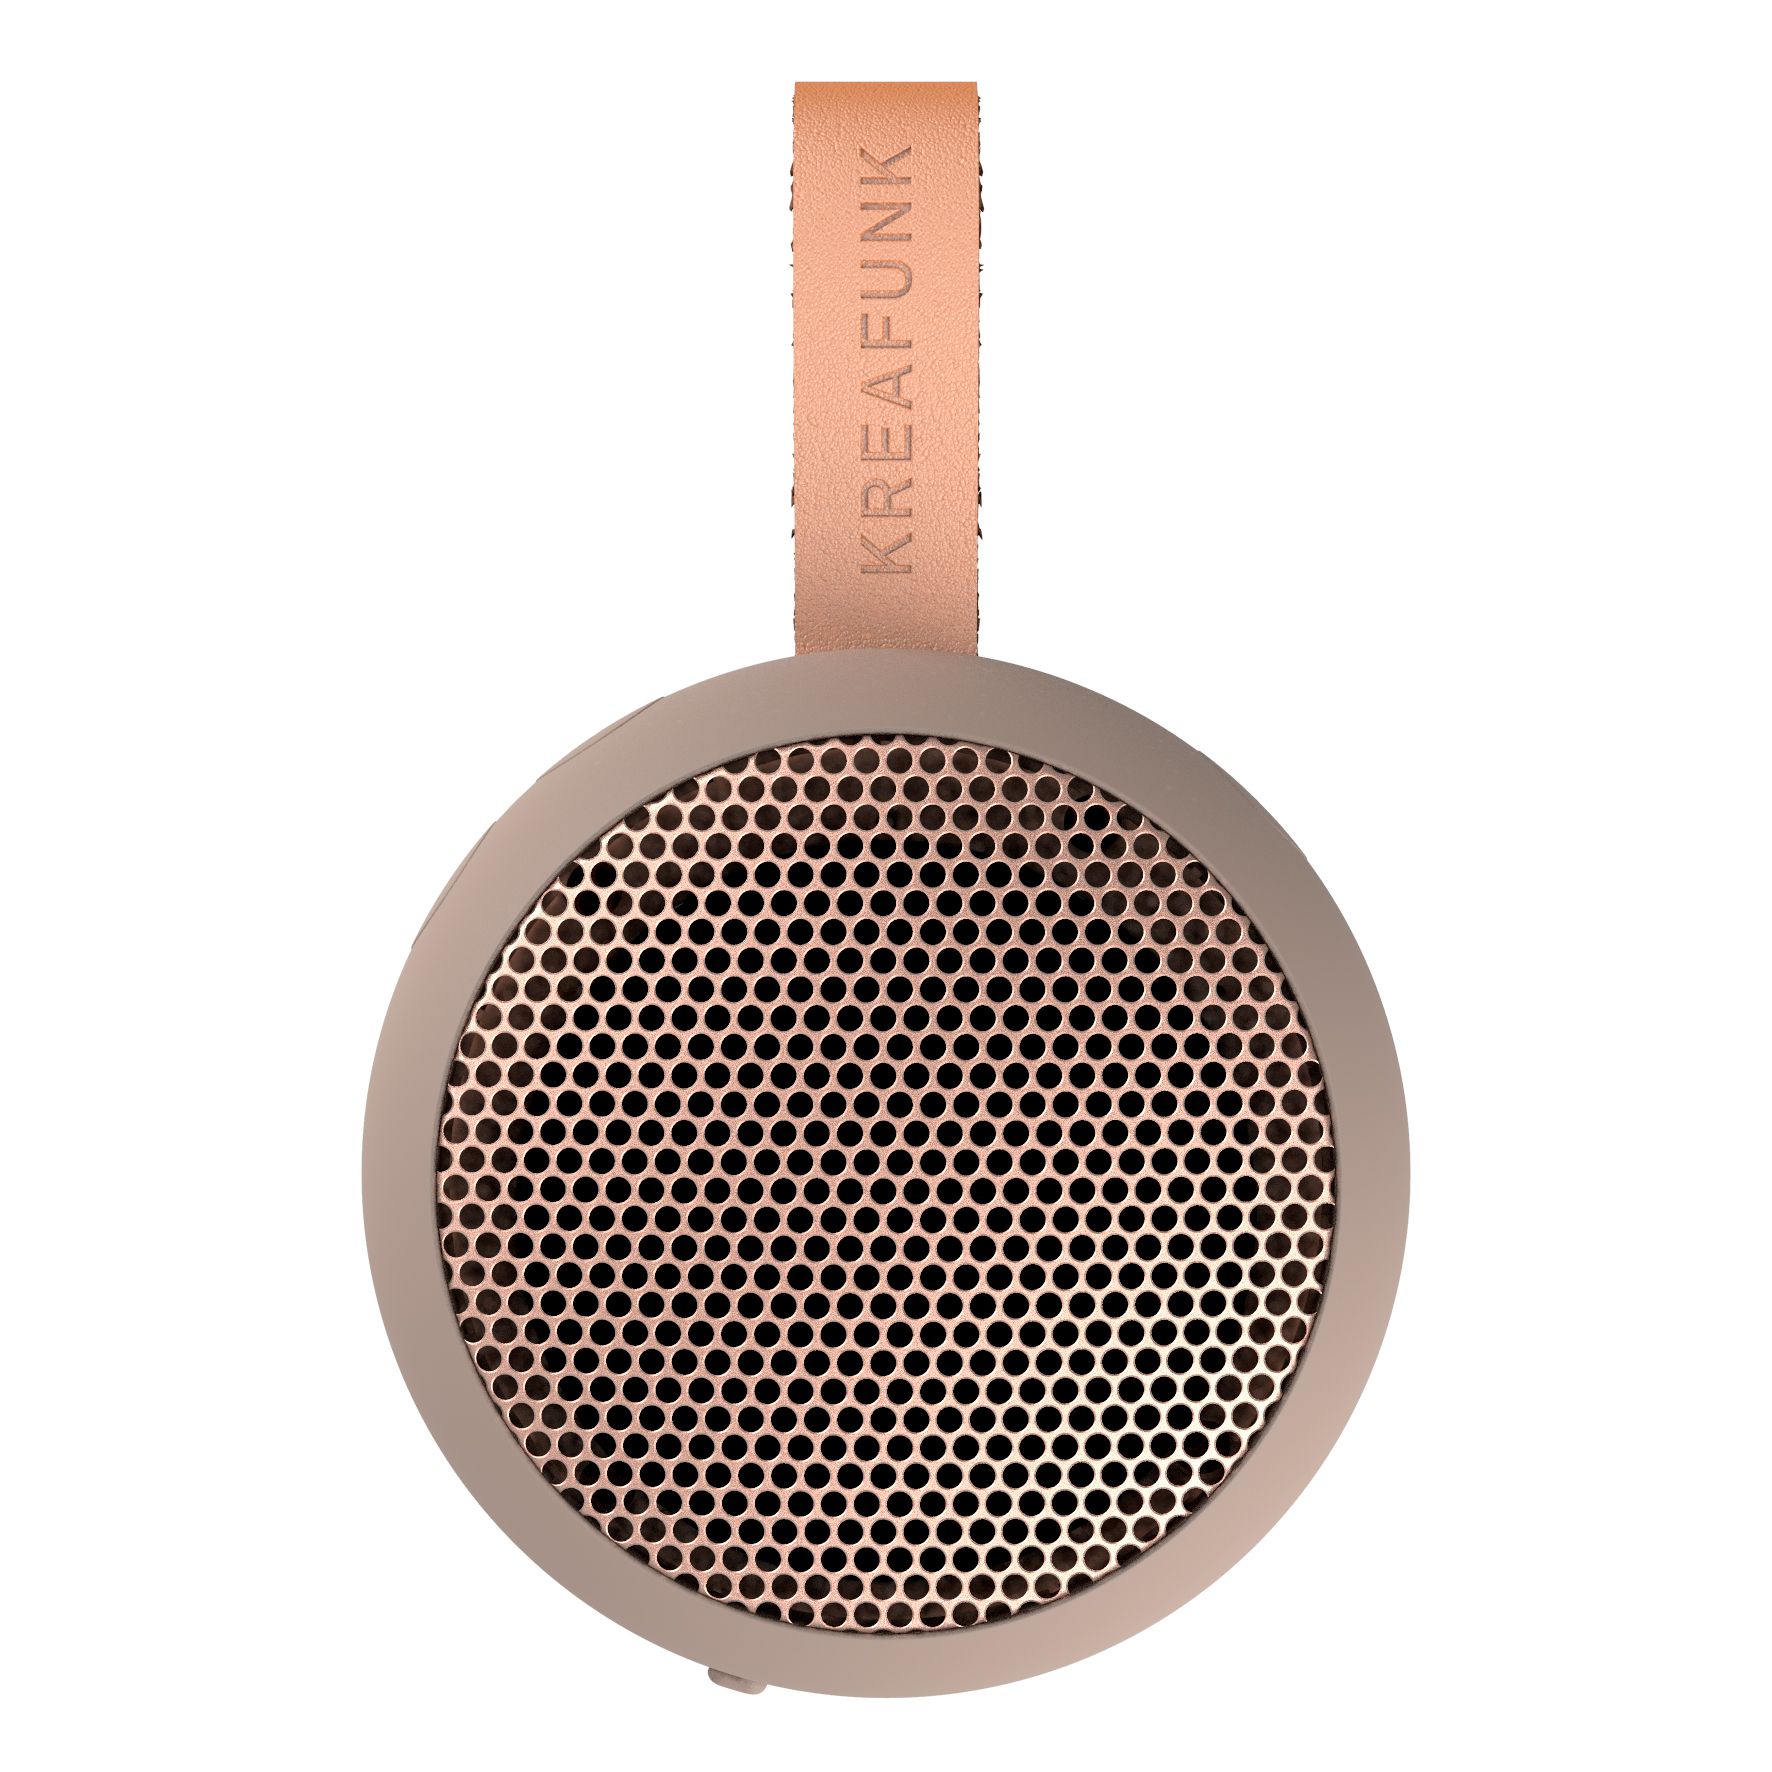 KreaFunk - aGO Bluetooth Speaker - Ivory Sand (Kfwt39)